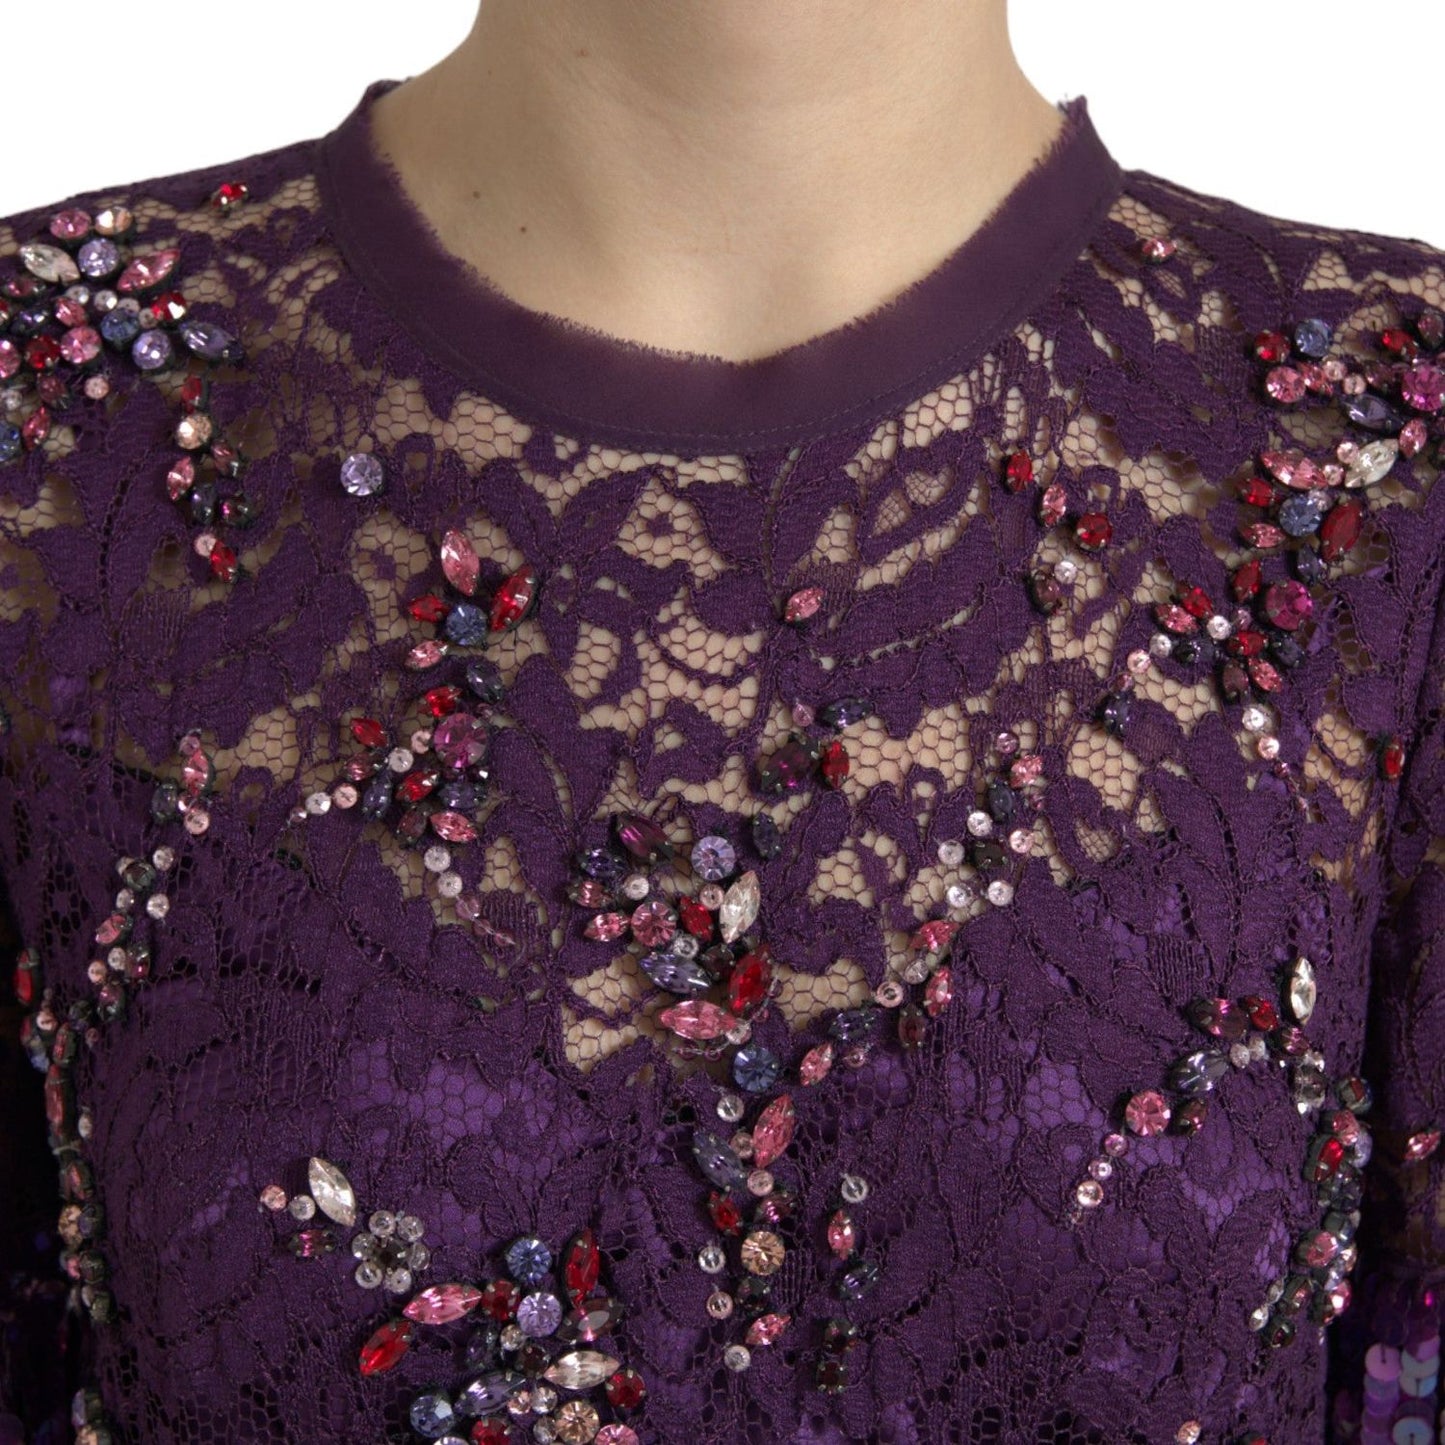 Dolce & Gabbana Elegant Purple Floral Lace Crystal Dress purple-floral-lace-crystal-embedded-dress